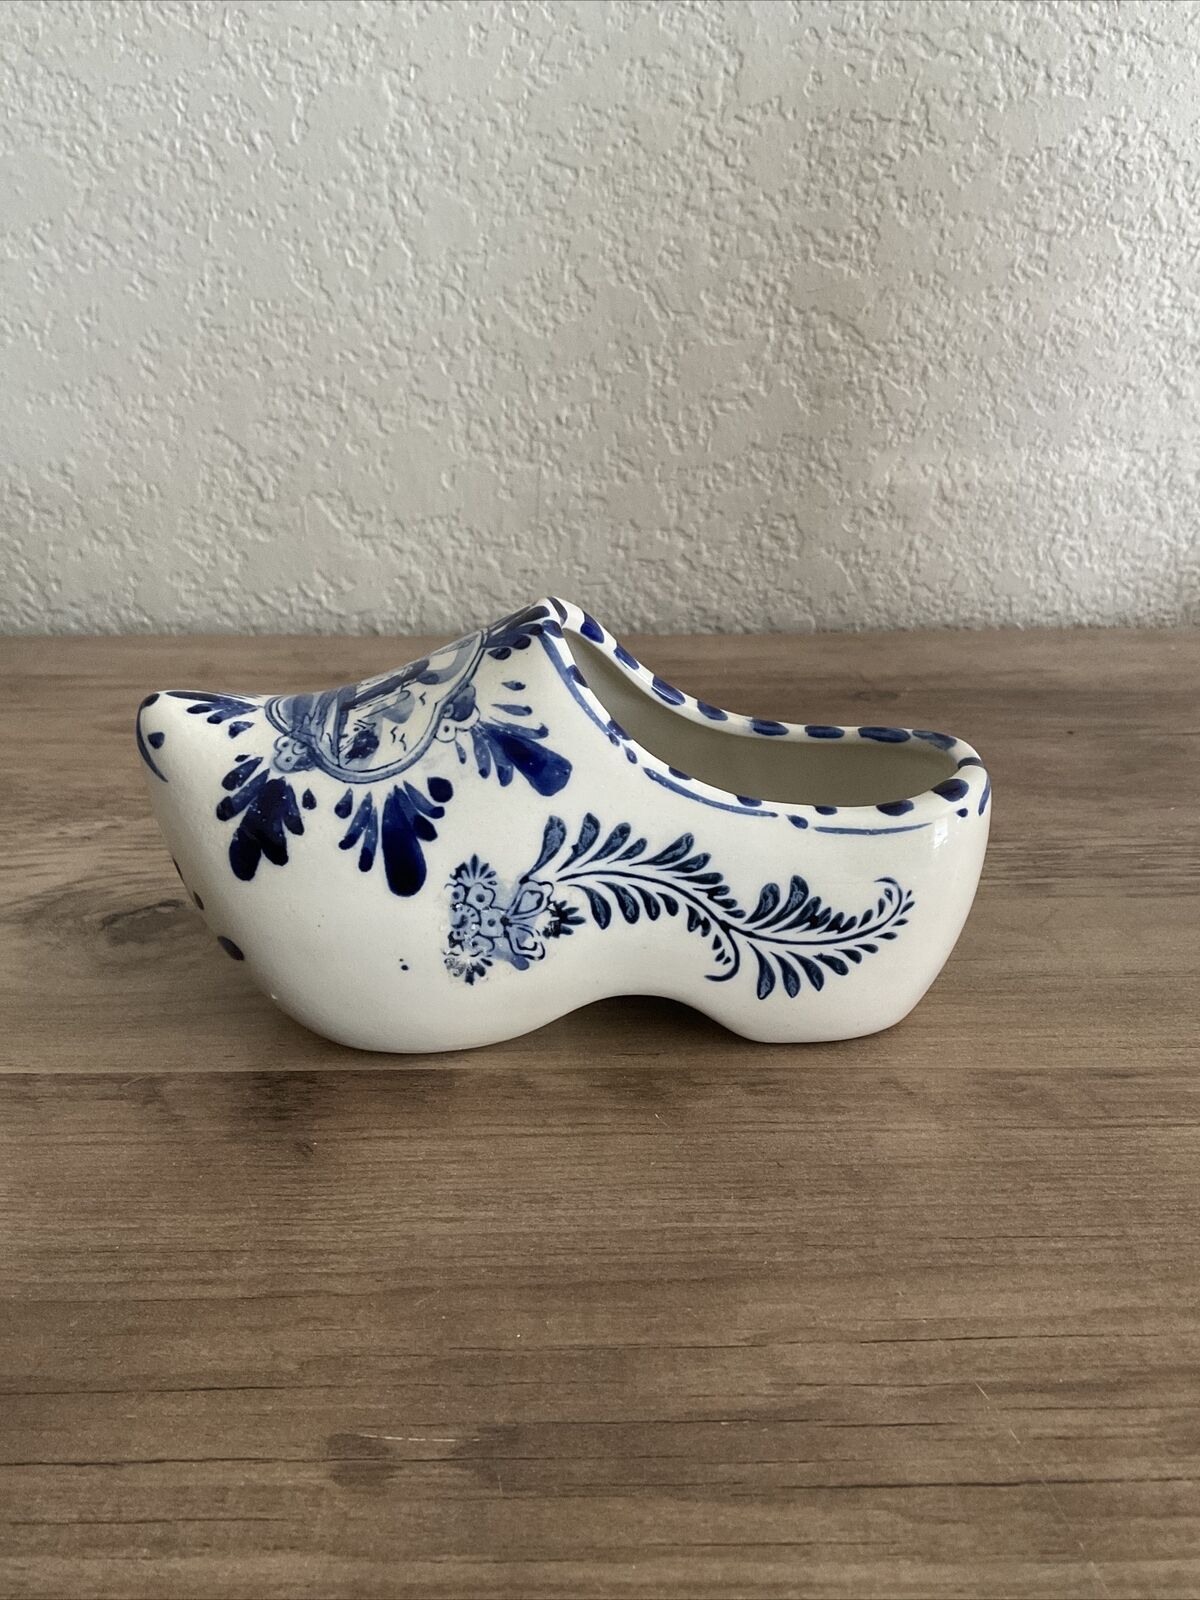 Delft Deco Holland Porcelain Clog Shoe Hand Painted